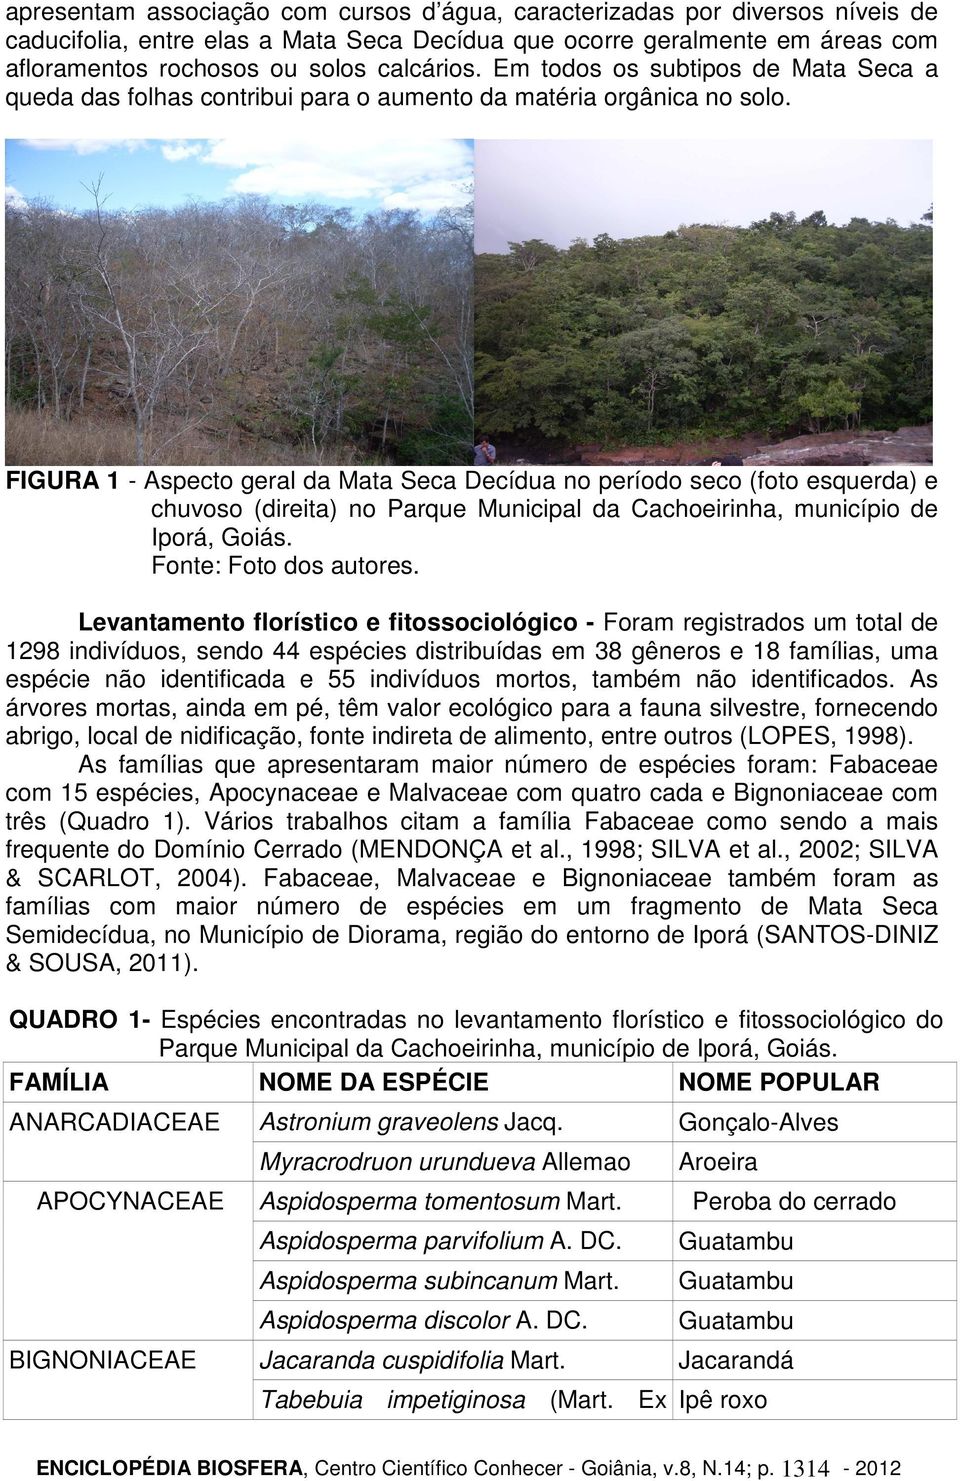 FIGURA 1 - Aspecto geral da Mata Seca Decídua no período seco (foto esquerda) e chuvoso (direita) no Parque Municipal da Cachoeirinha, município de Iporá, Goiás. Fonte: Foto dos autores.